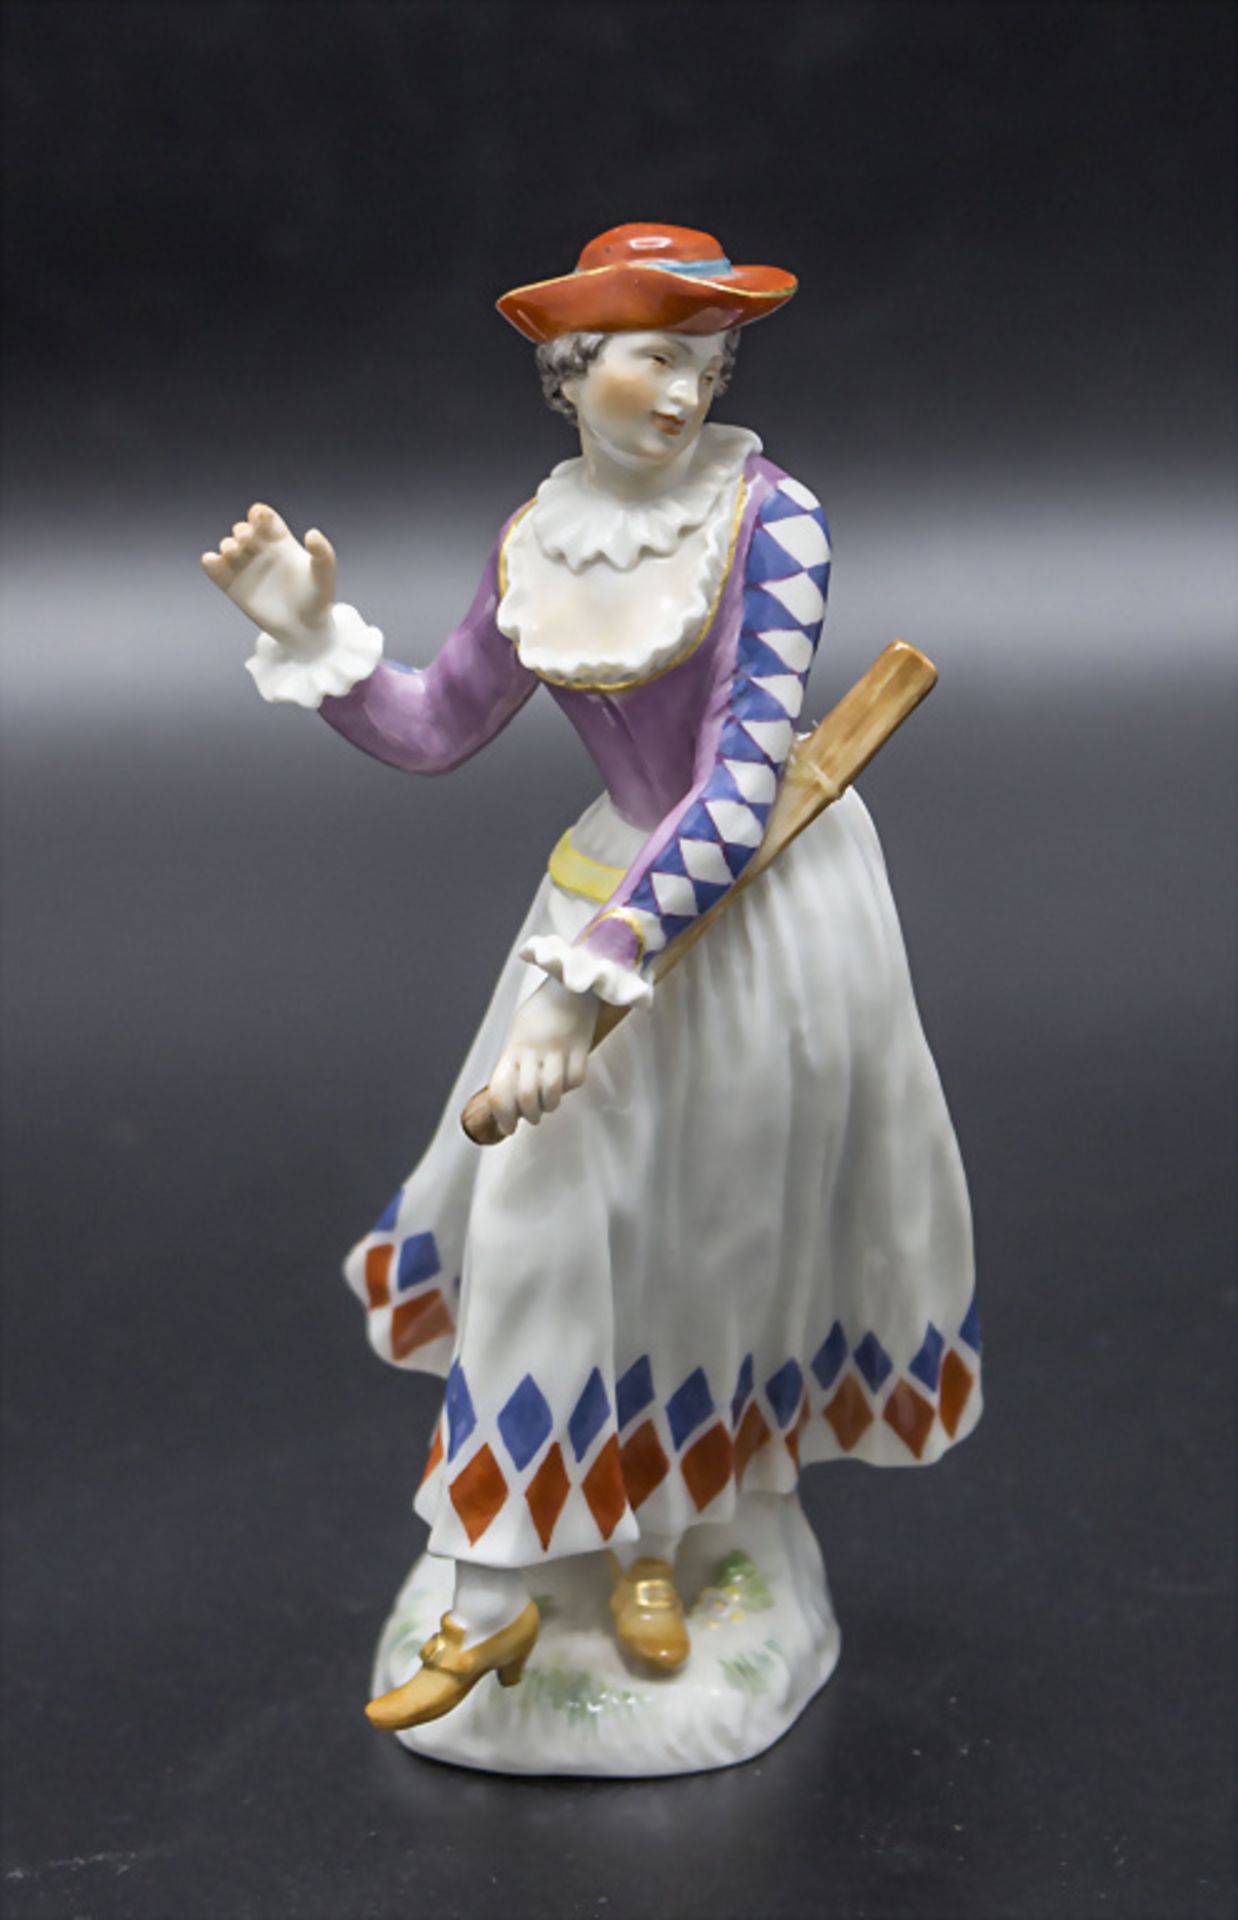 Porzellanfigur 'Arlequina' / A porcelain figure 'Arlequina', Peter Reinecke, Meissen, 20. Jh.